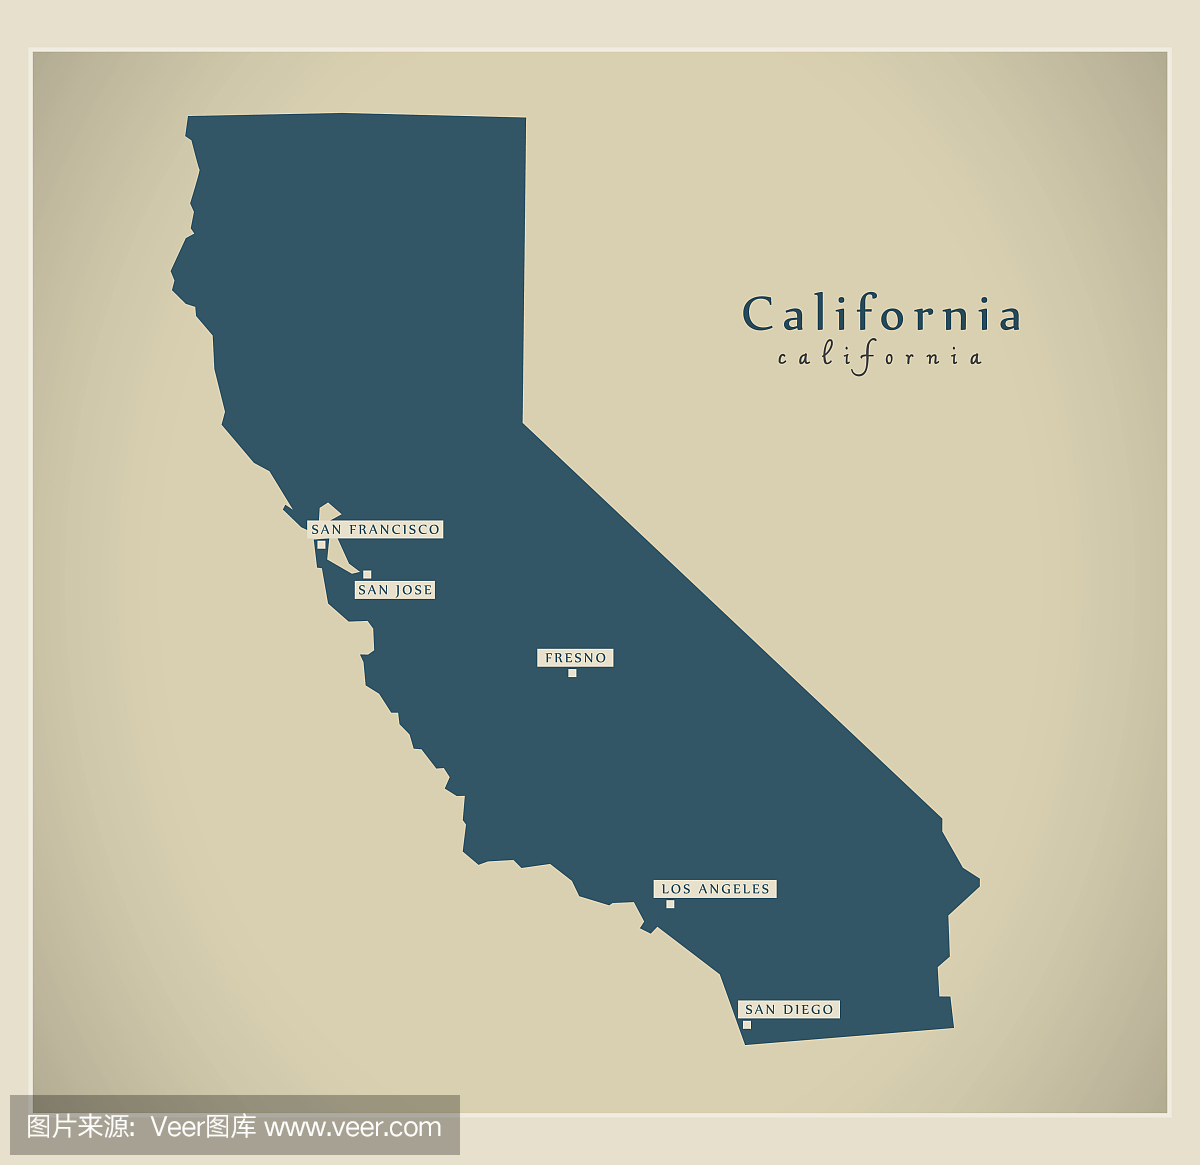 现代地图 - 加州美国